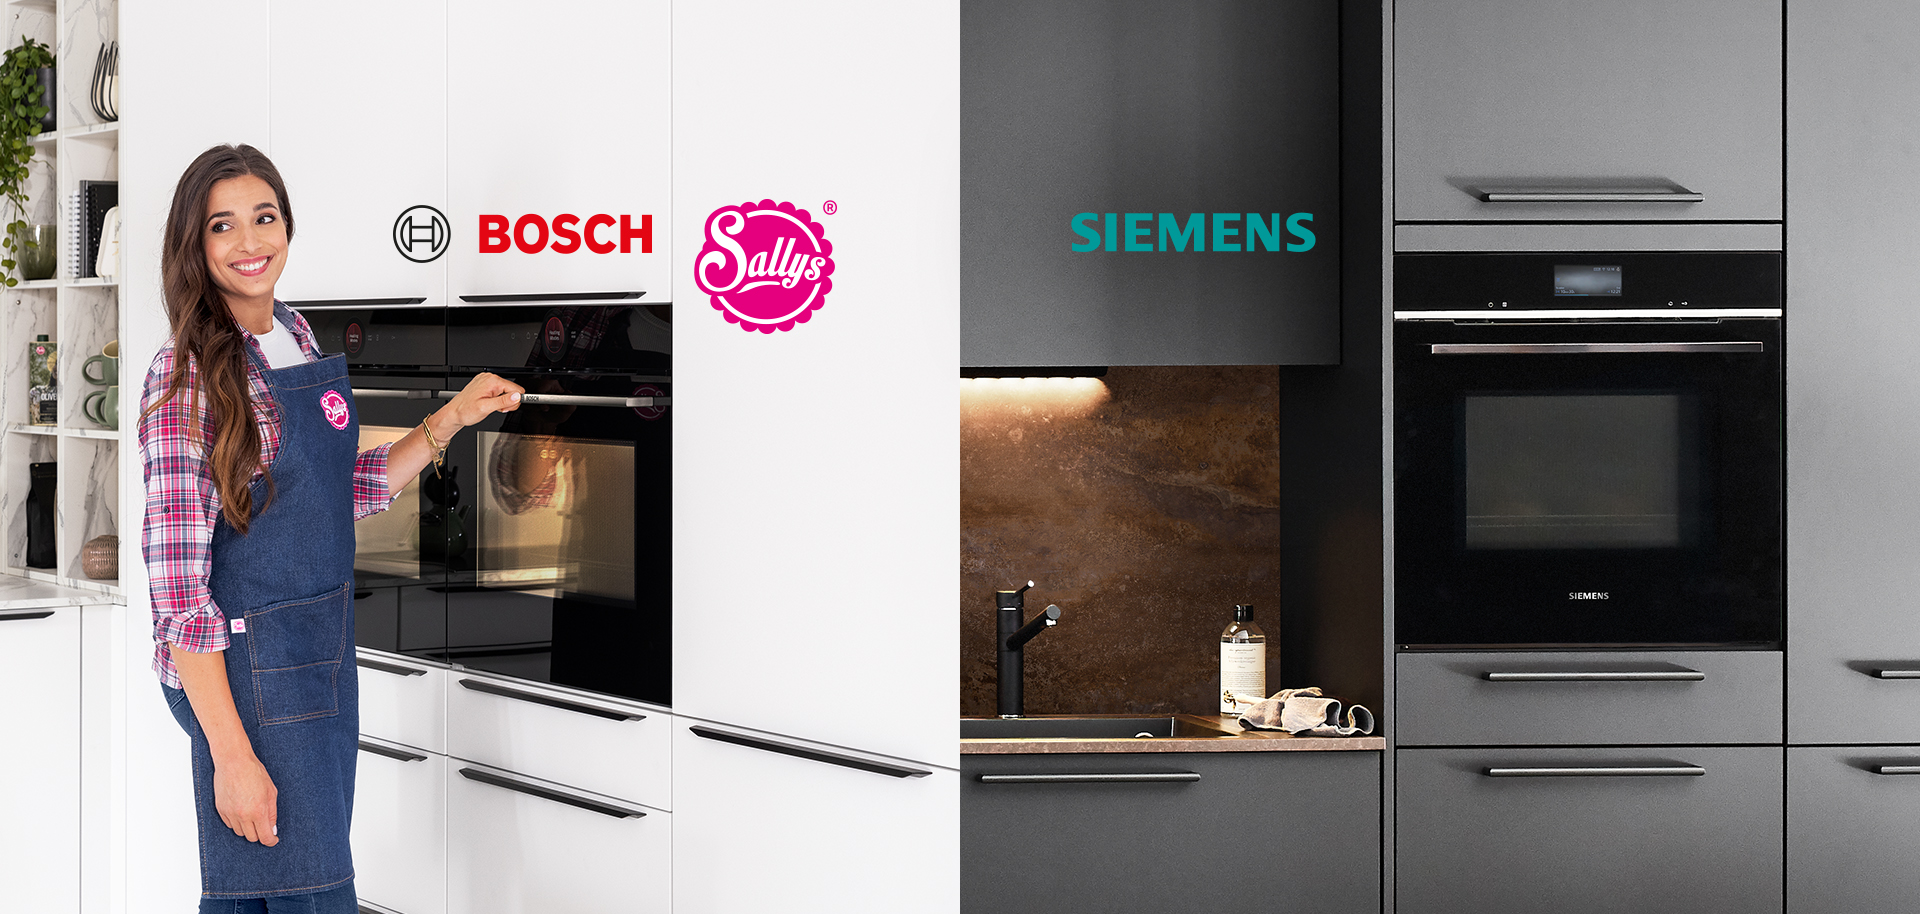 Une personne souriante portant un tablier présente un four Bosch, tandis que de l'autre côté, une cuisine moderne Siemens avec des appareils élégants est mise en valeur.